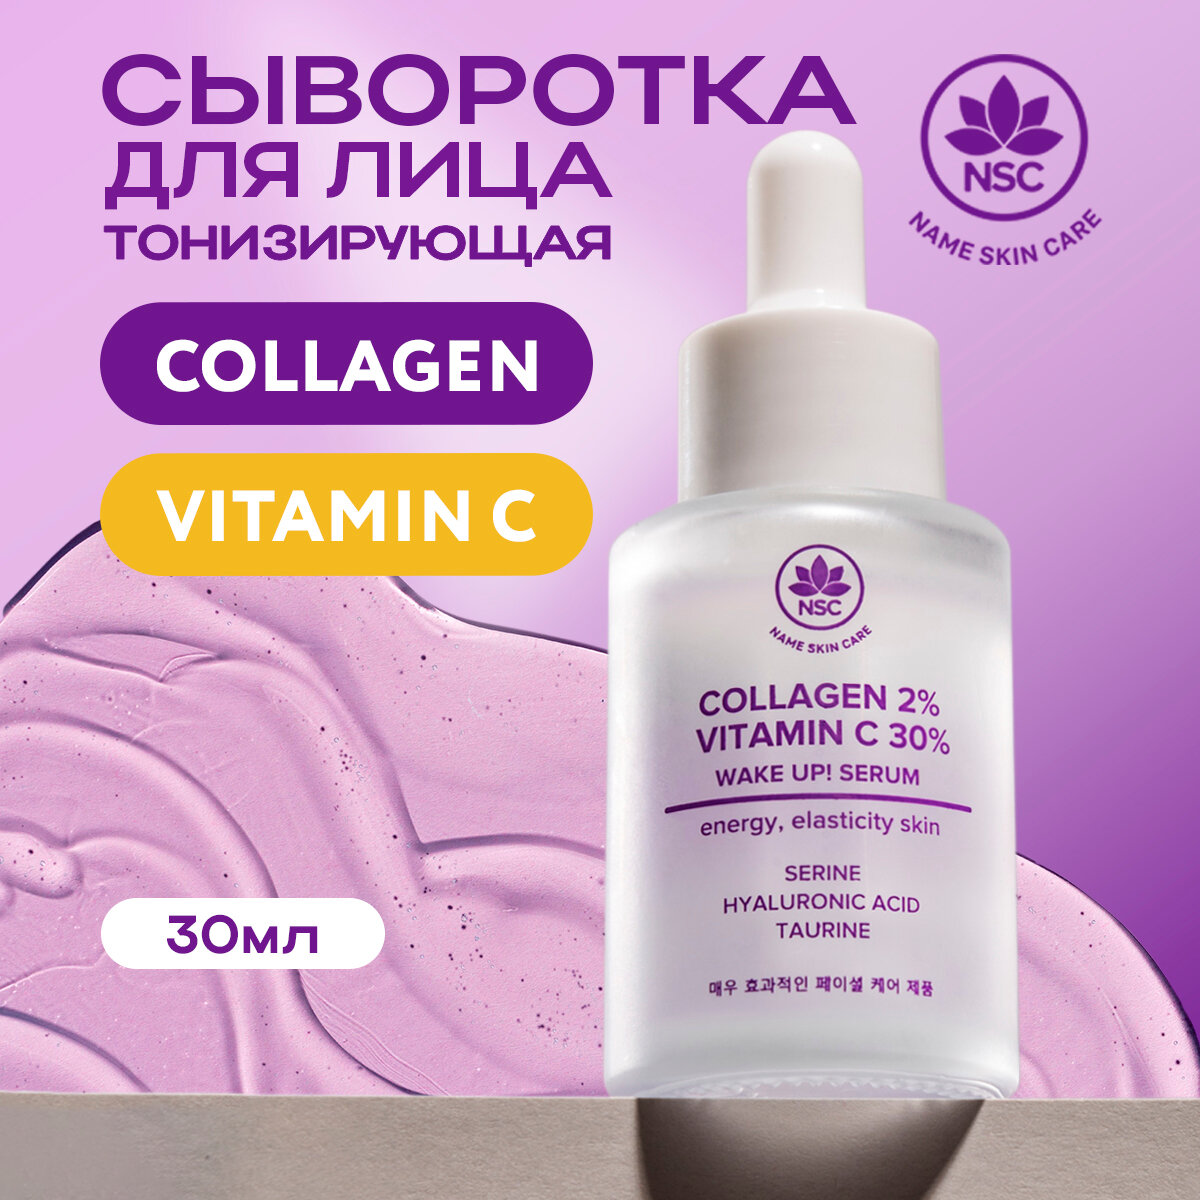 Name Skin Care Тонизирующая сыворотка для лица с Витамином С и Коллагеном 30 мл.